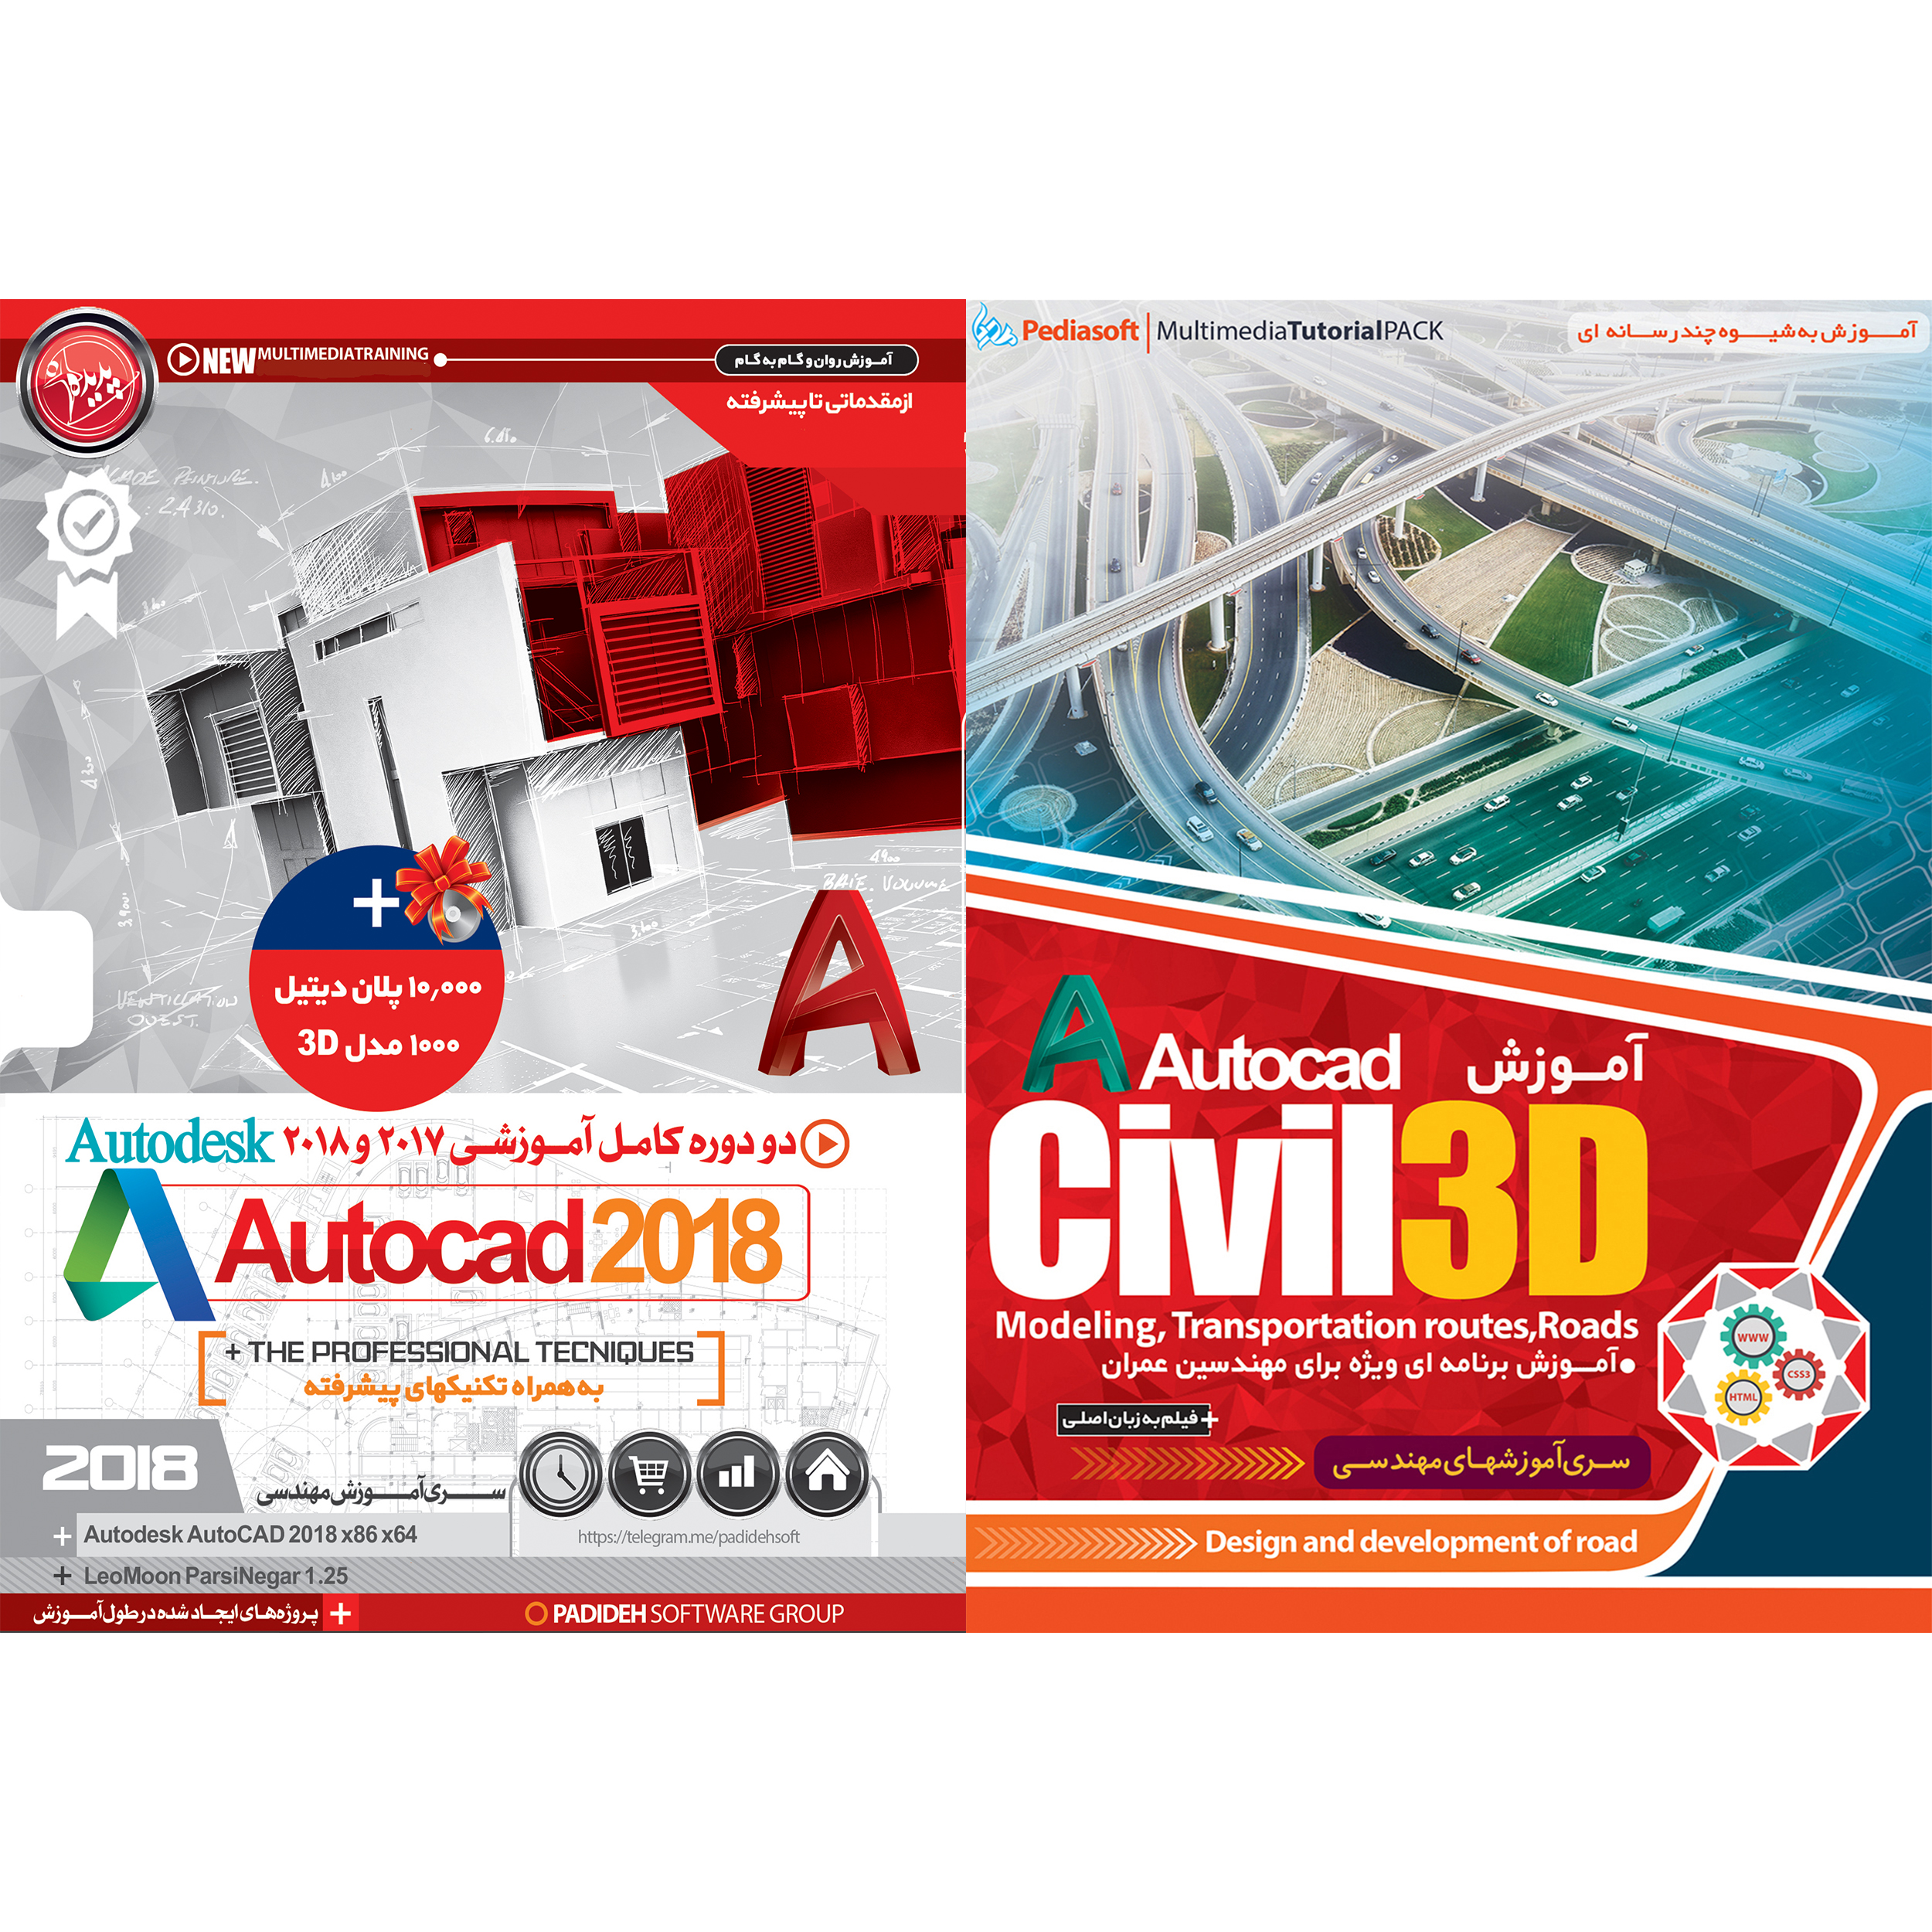 نرم افزار آموزش CIVIL 3D نشر پدیا سافت به همراه نرم افزار آموزش 2018 AUTOCAD نشر پدیده